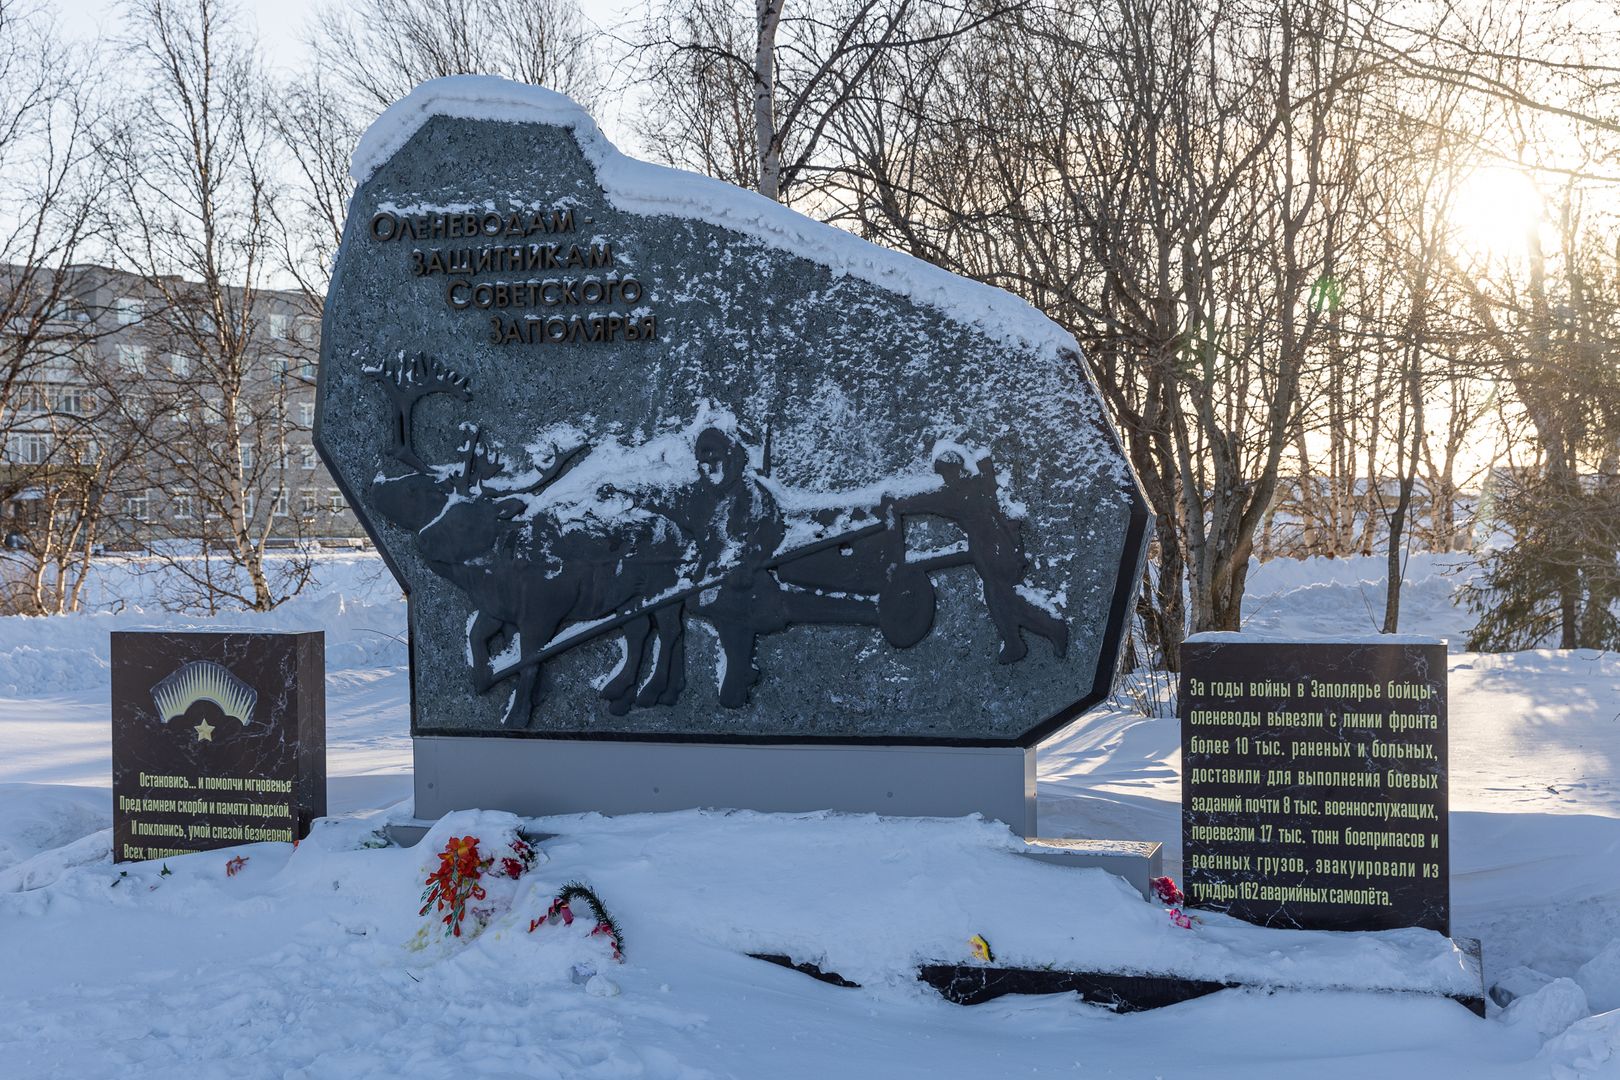 Мемориал в память оленеводов — защитников Советского заполярья.